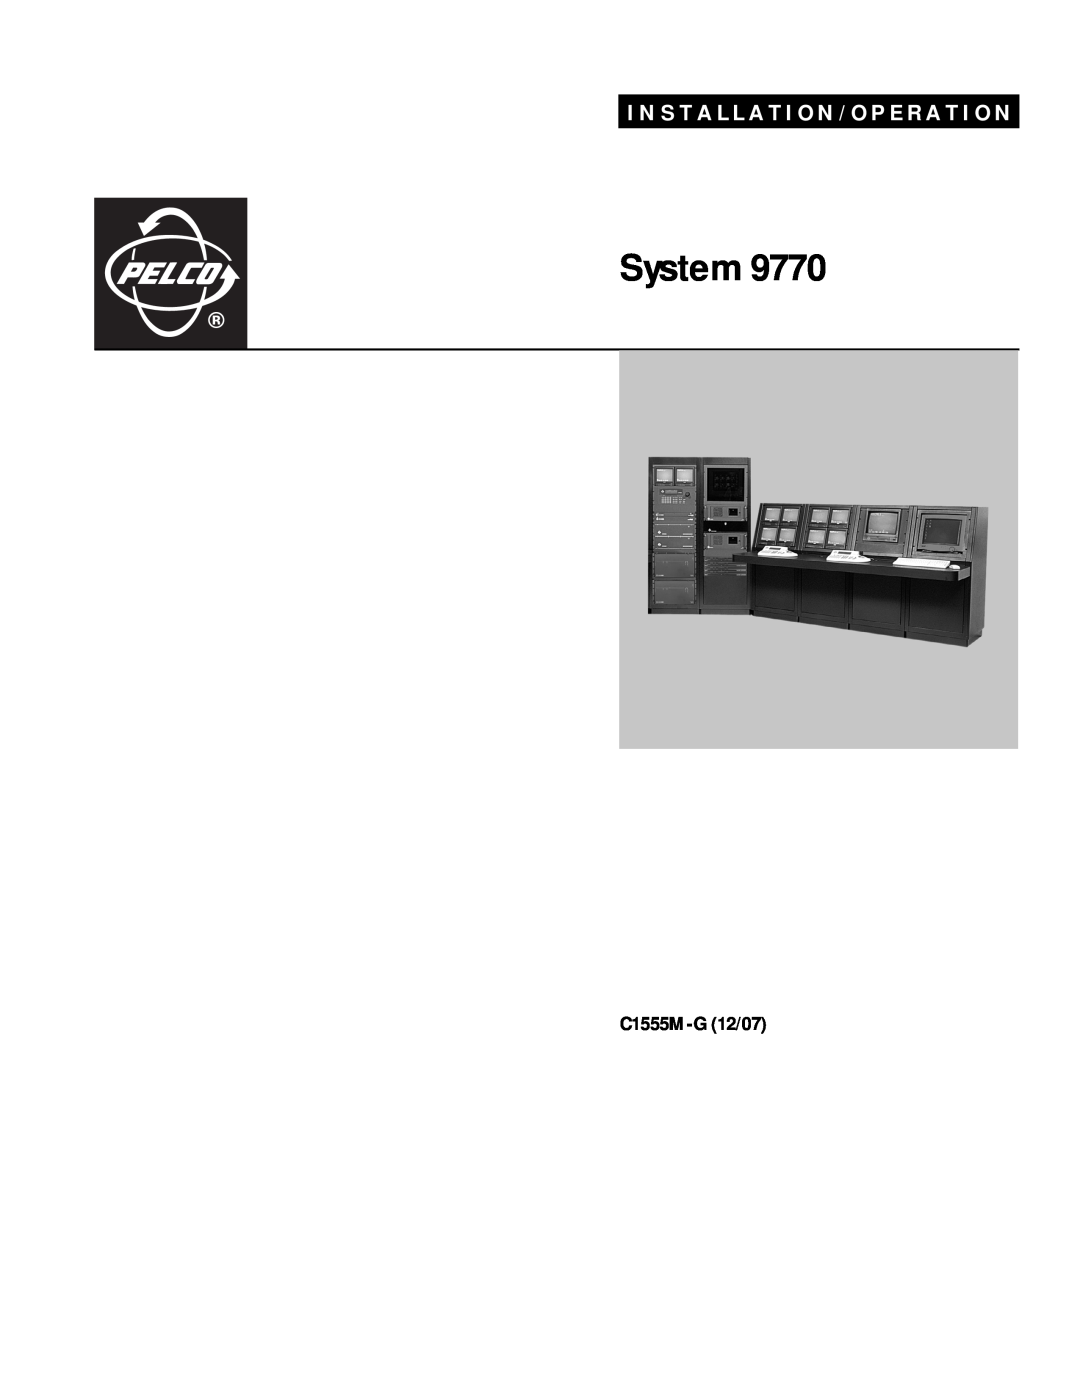 Pelco 9770 manual C1555M-G 12/07, System, I N S T A L L A T I O N / O P E R A T I O N 